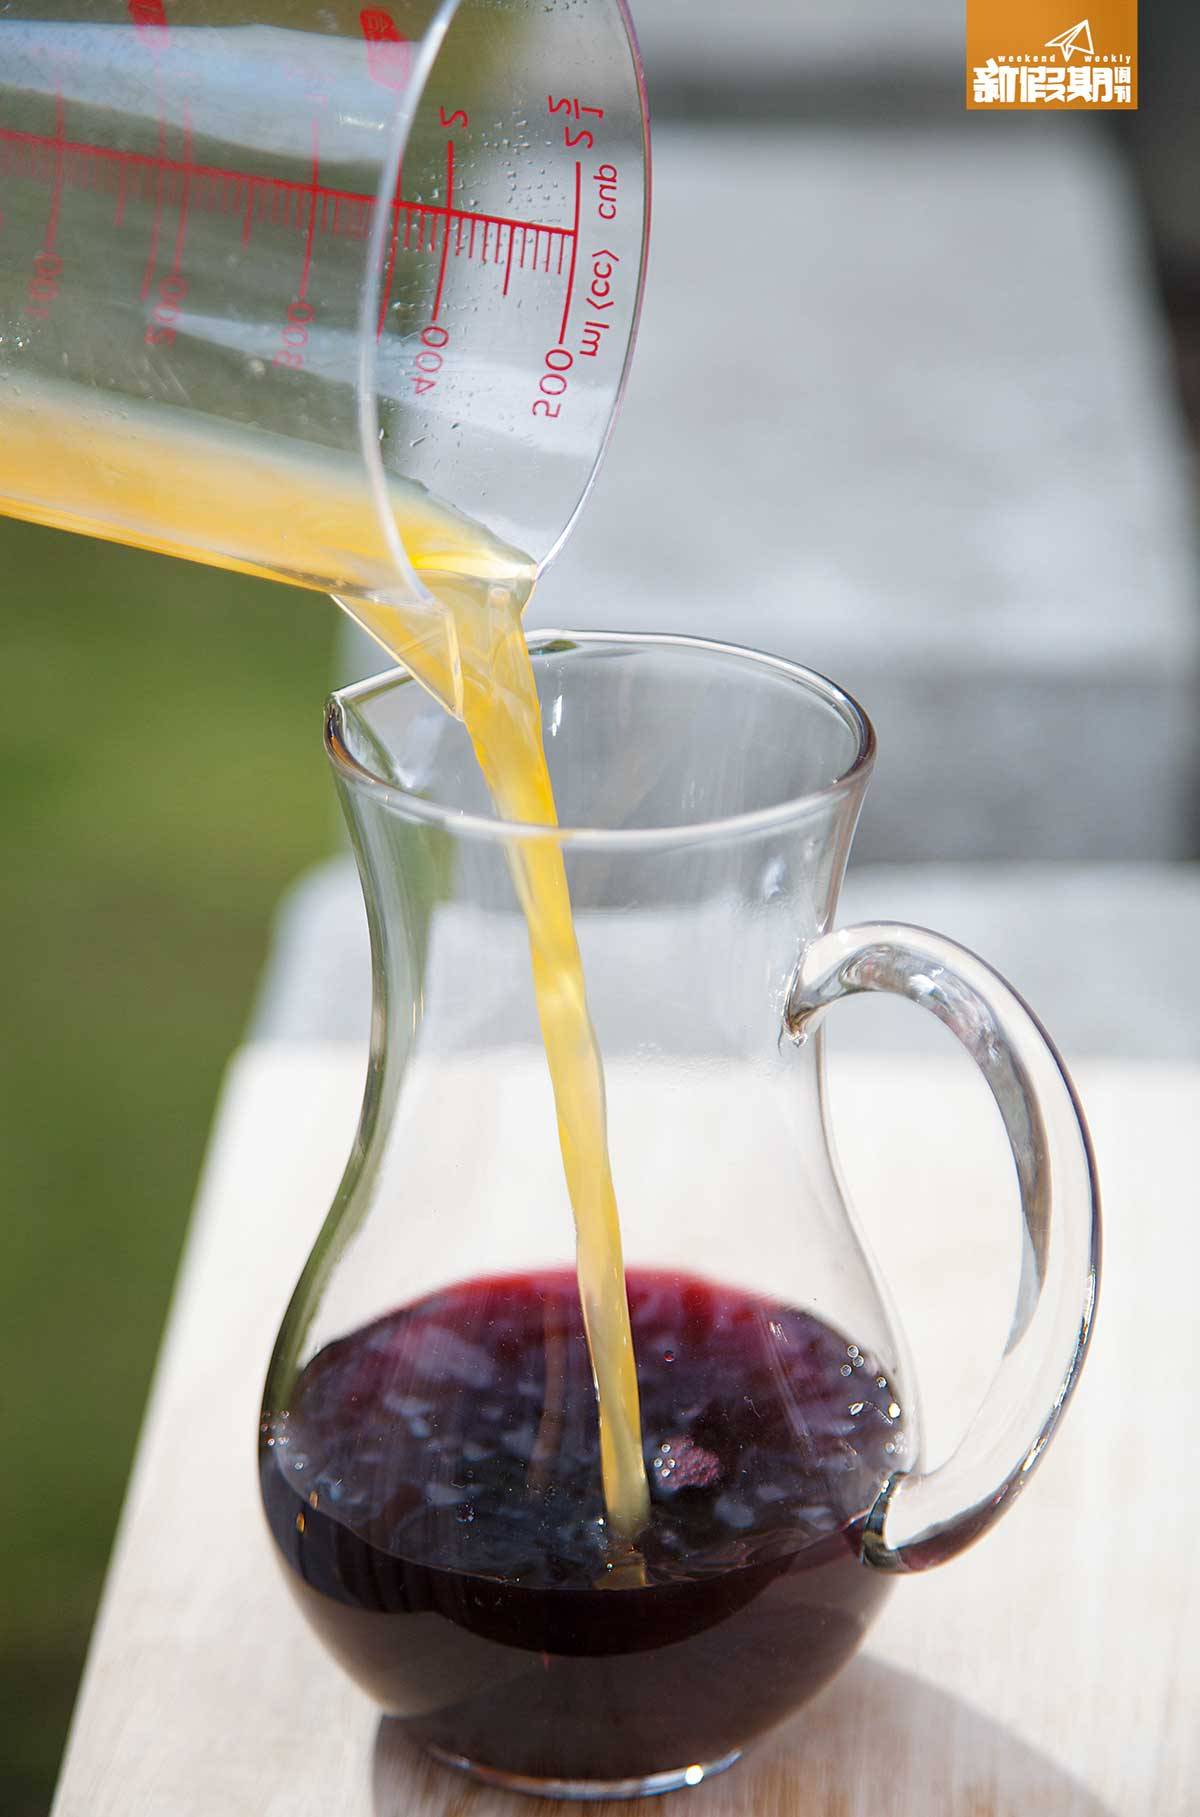 野餐食物 1.將紅酒、紅醋及橙汁加進大玻璃瓶中。